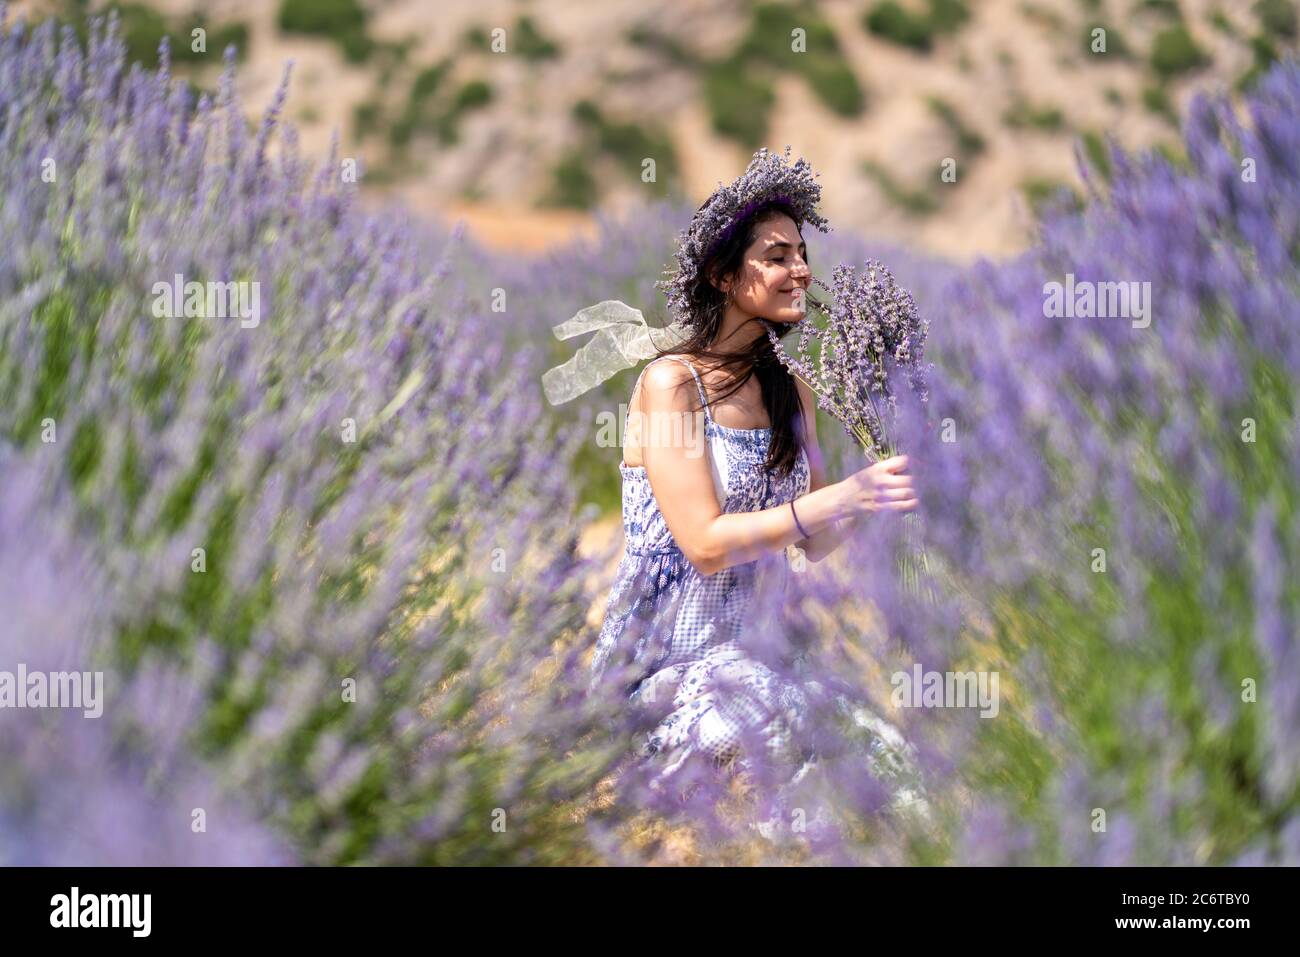 Junge Frau genießt die Aussicht und das Sonnenlicht auf ihrem Gesicht auf einem ländlichen Blumenfeld mit Lavendelblüten. Hochwertige Fotos Stockfoto